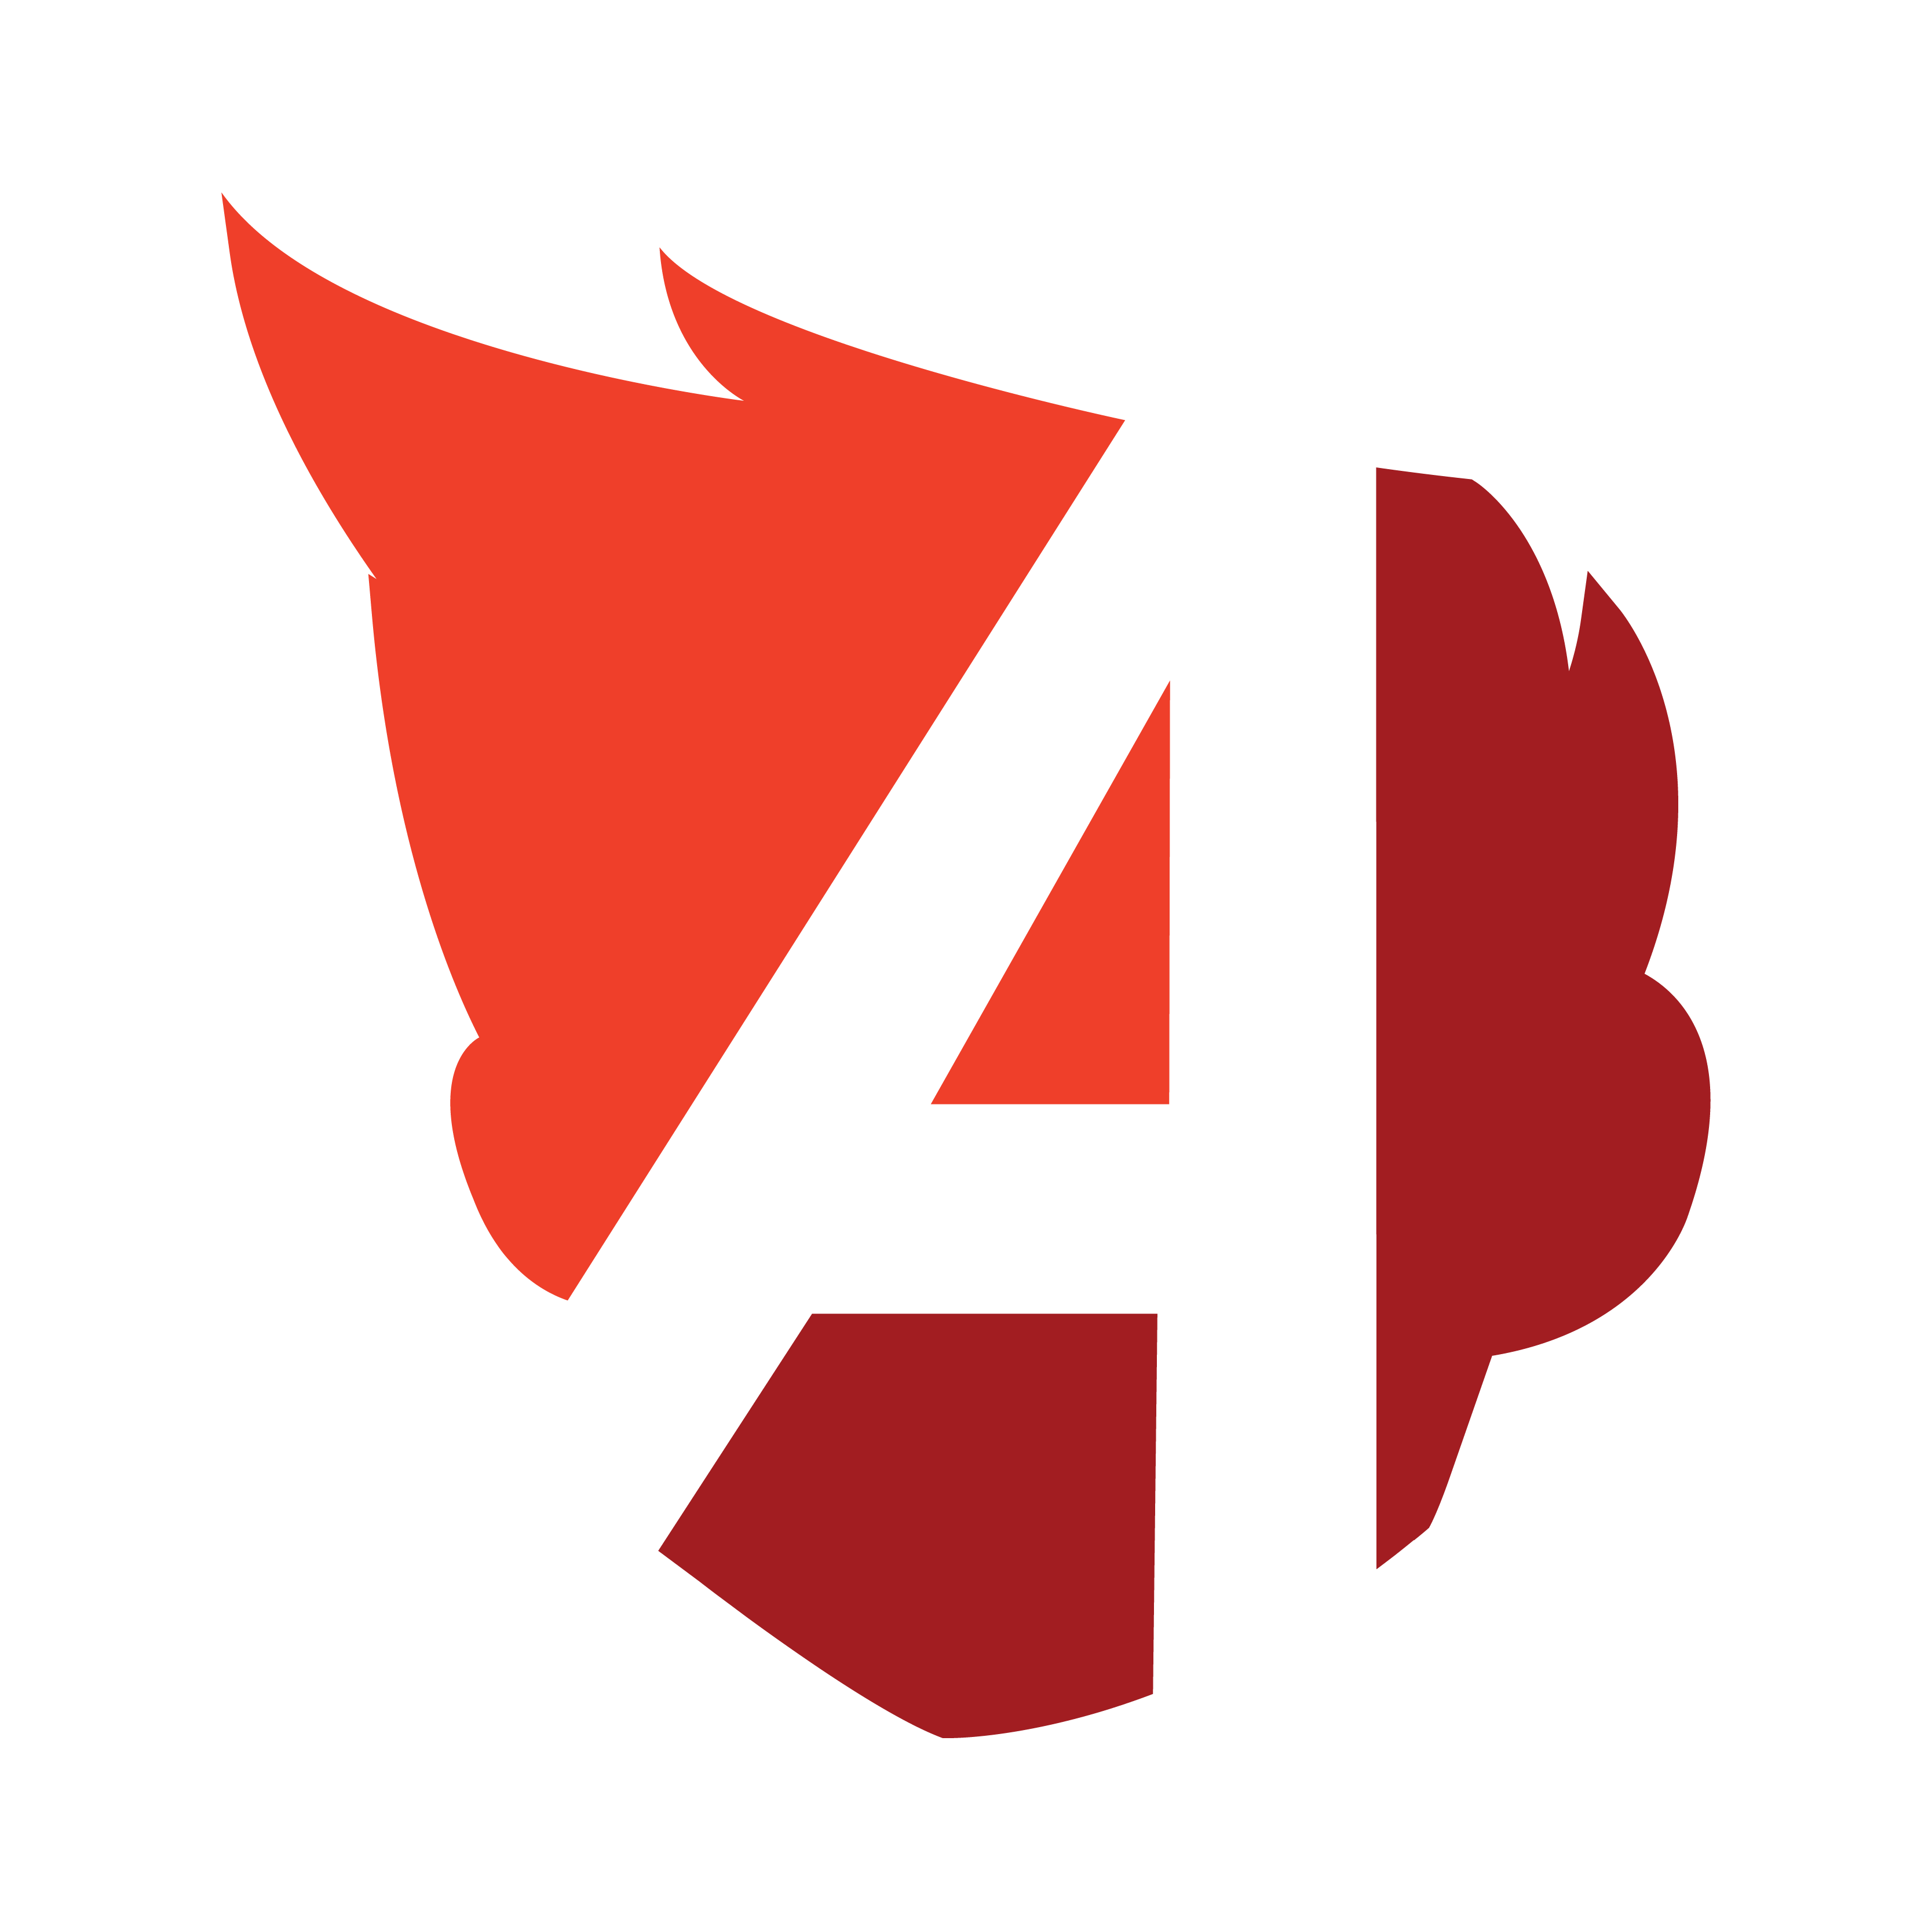 Abstrakt Marketing Group Company Logo